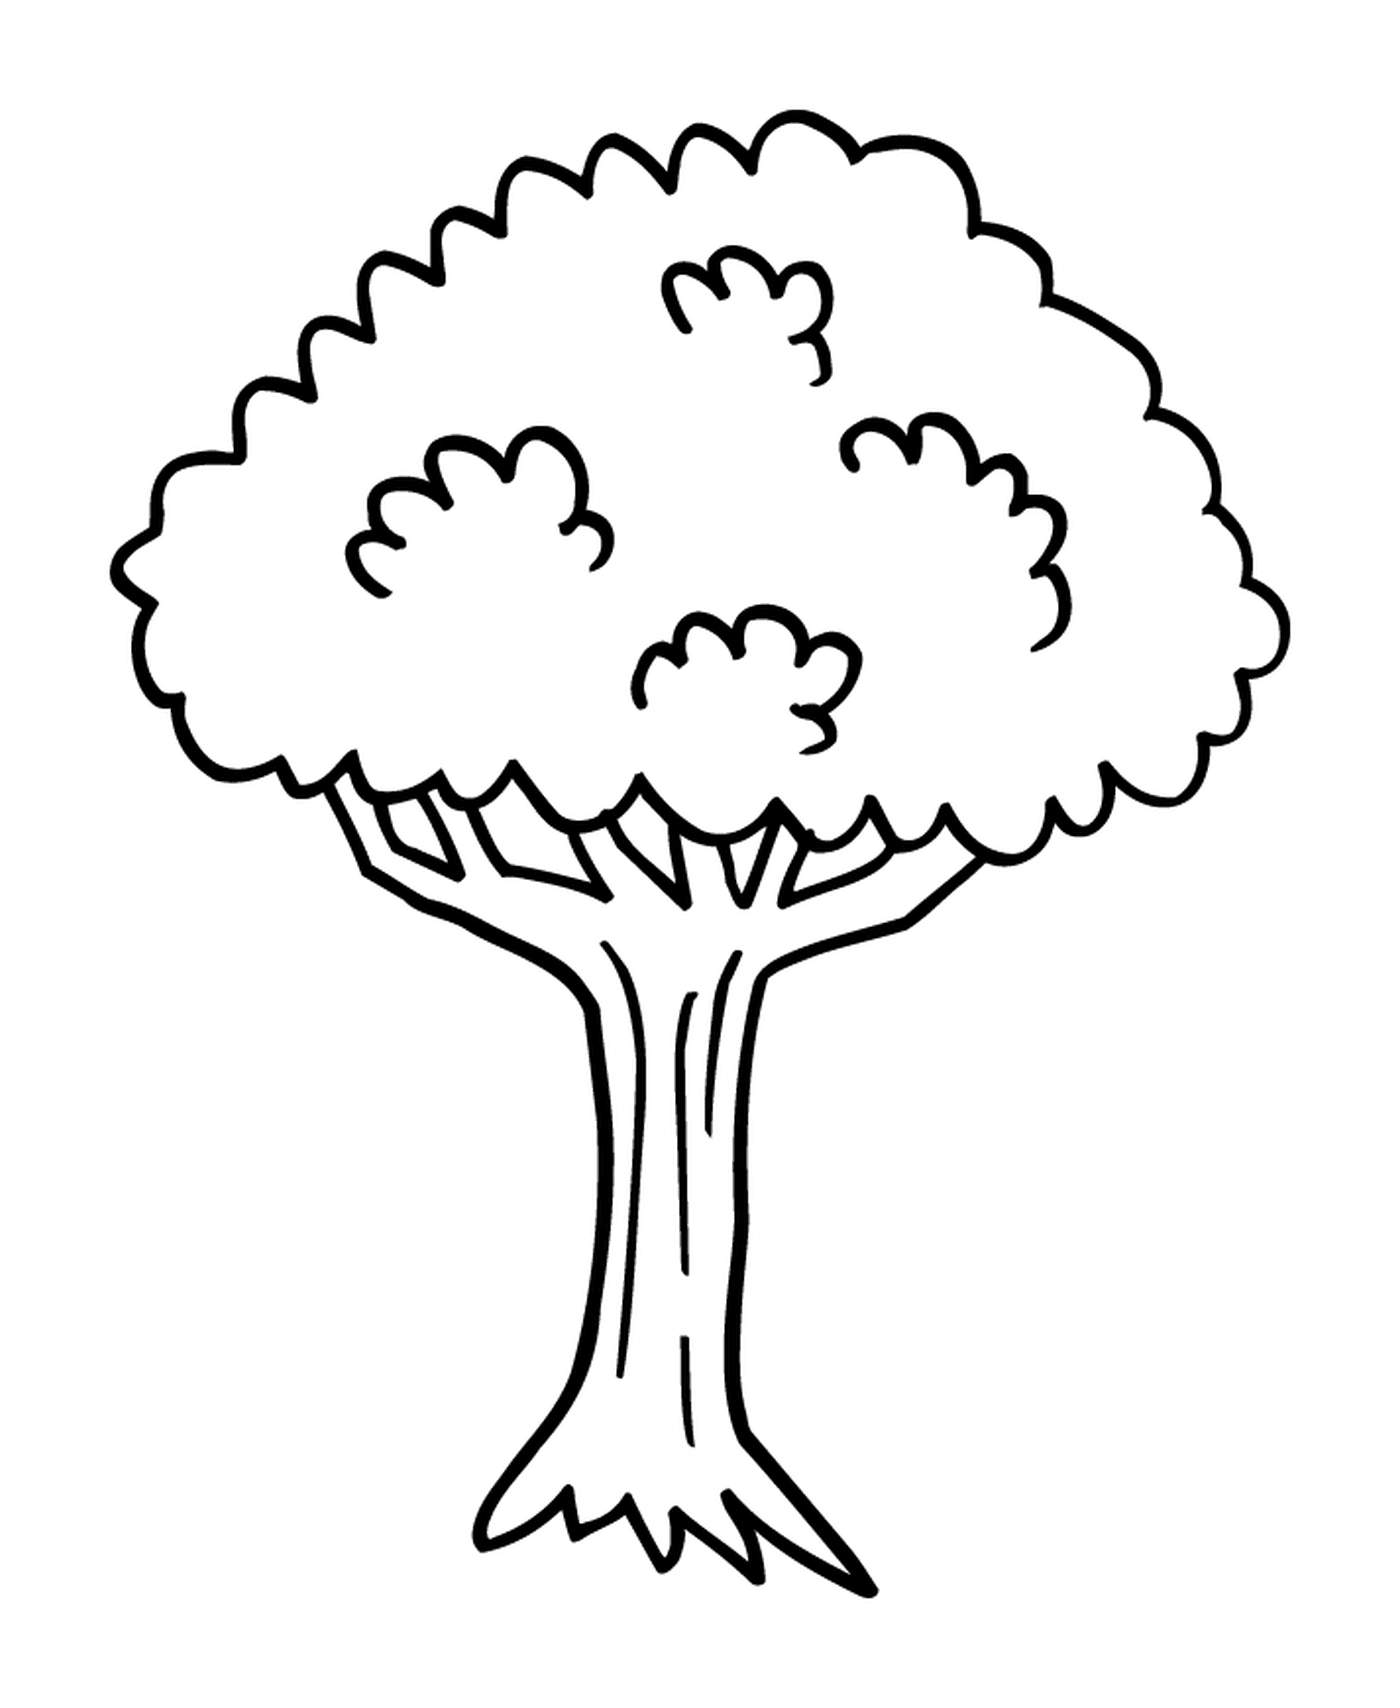  A tree 